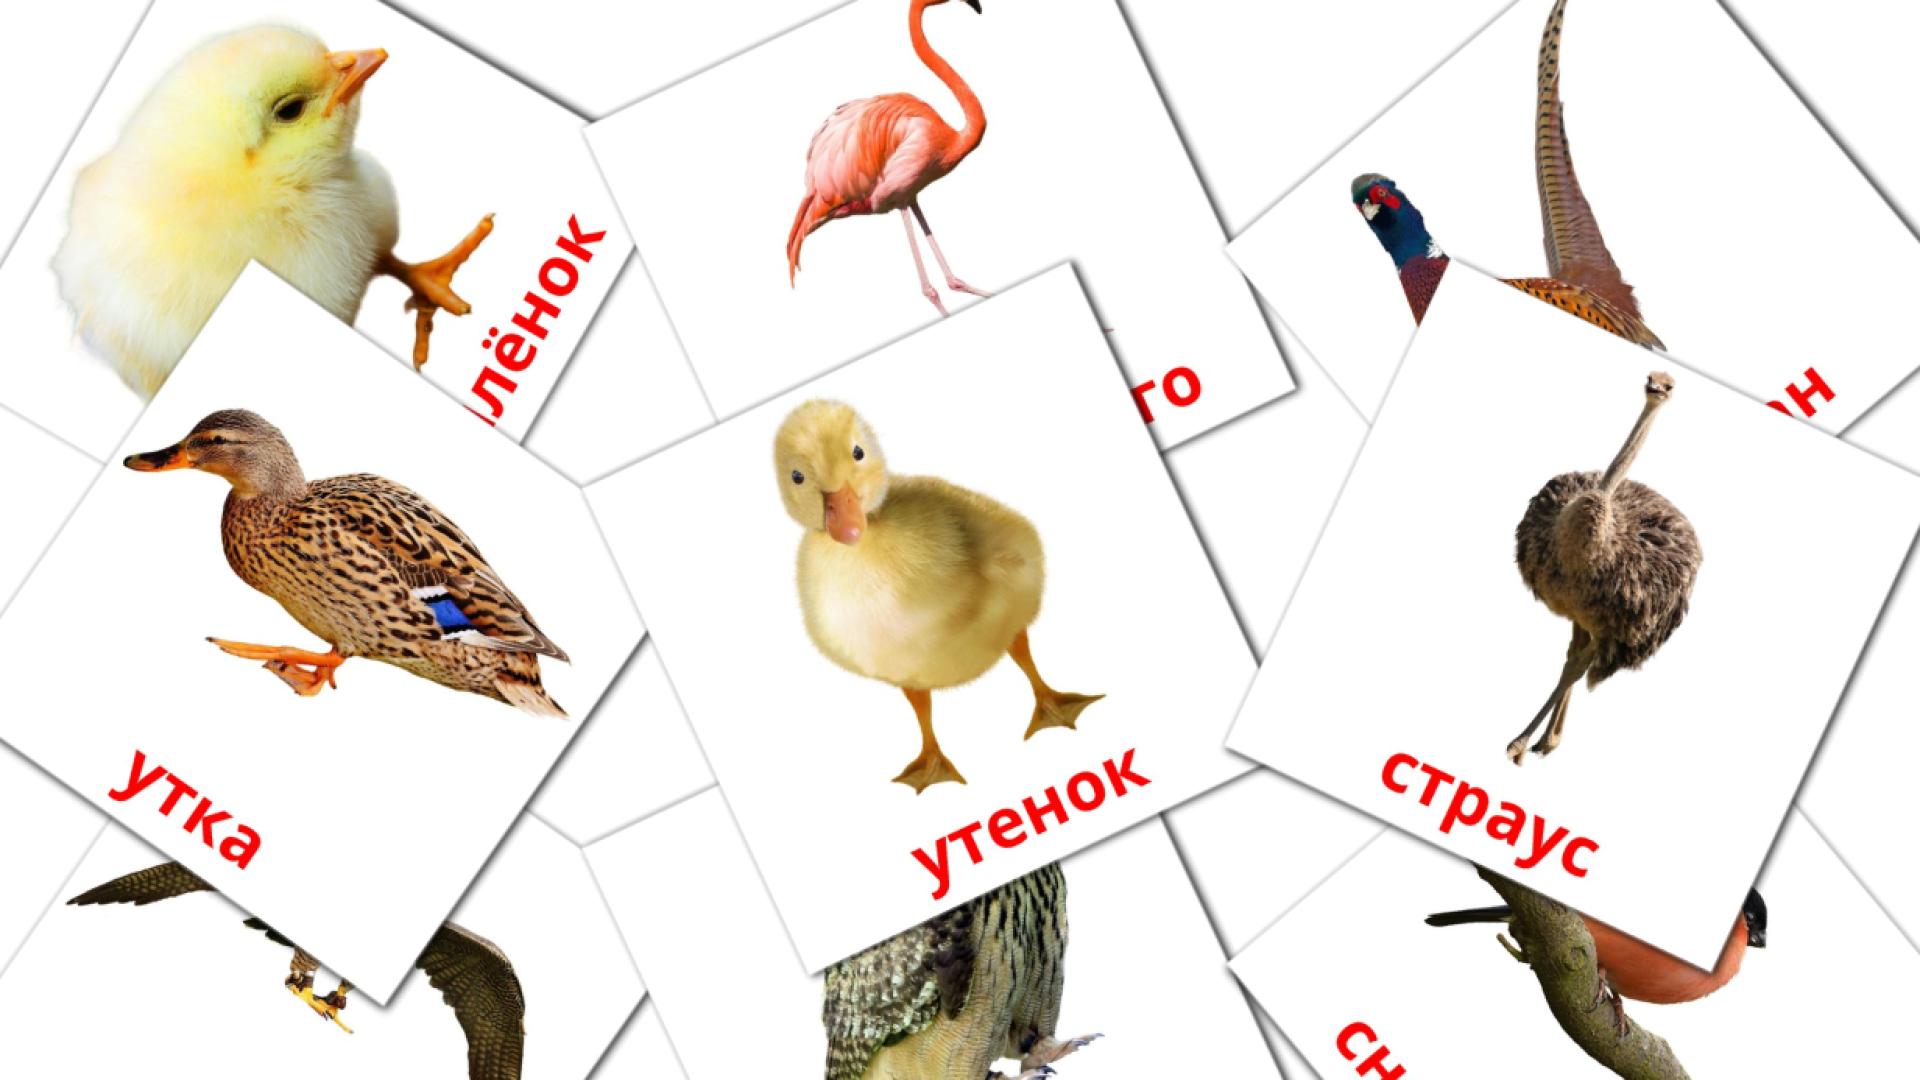 Russisch Птицыe Vokabelkarteikarten